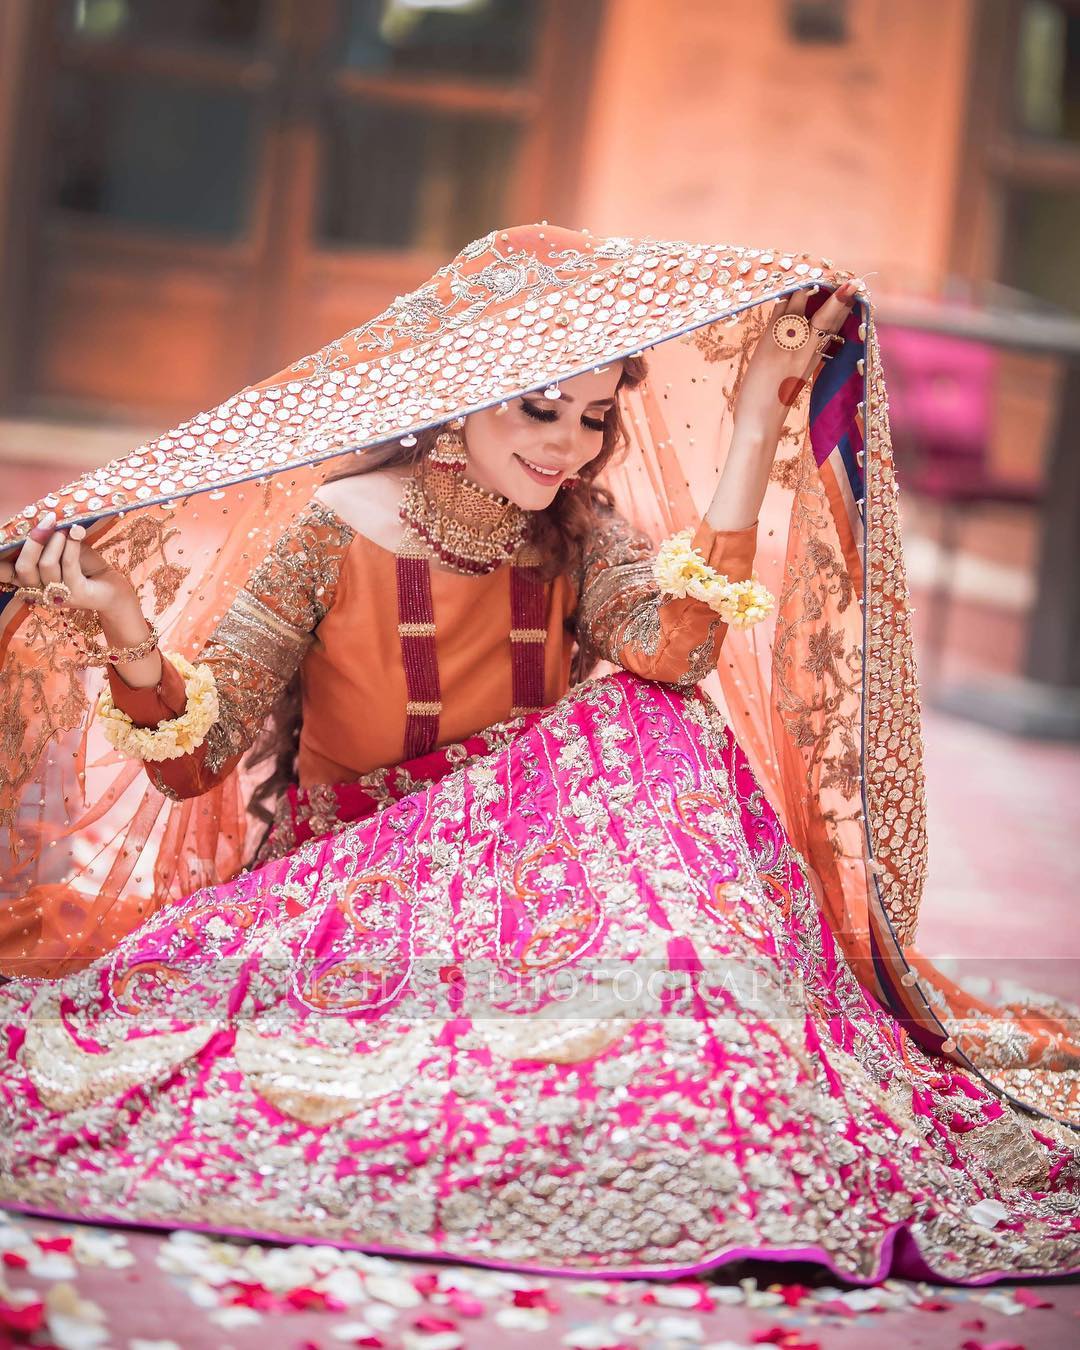 Beautiful Bridal Shoot of Actress Saniya Shamshad